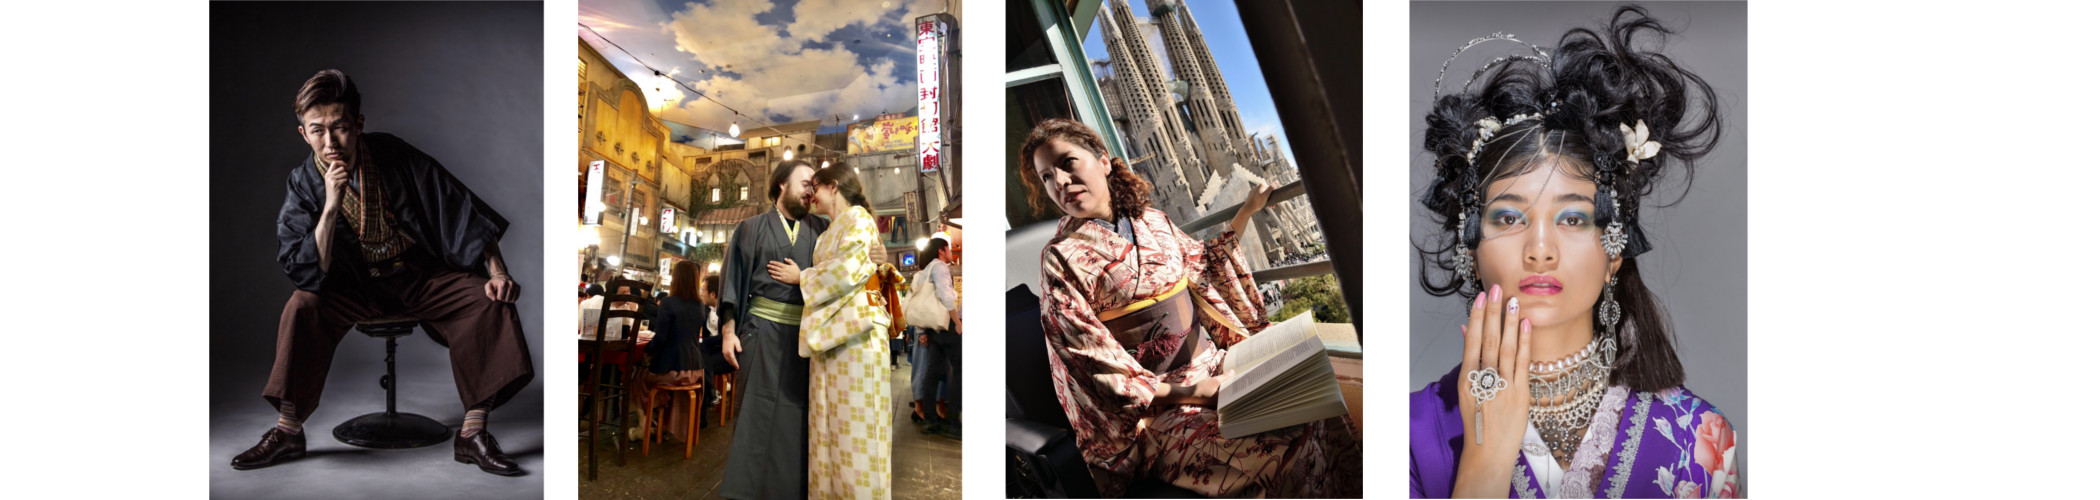 Estilismo del kimono Foto y alquirer kimono